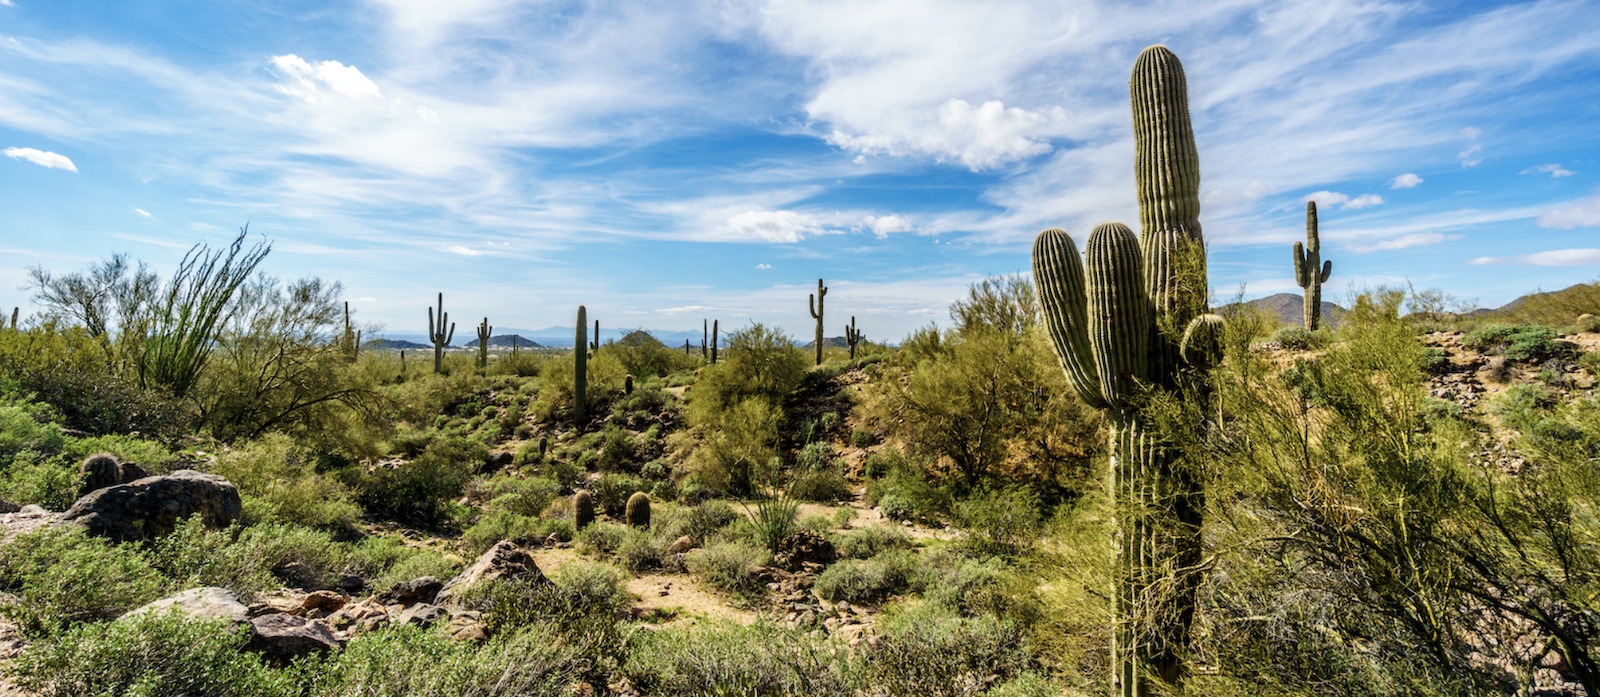 Cactus in the Arizona desert